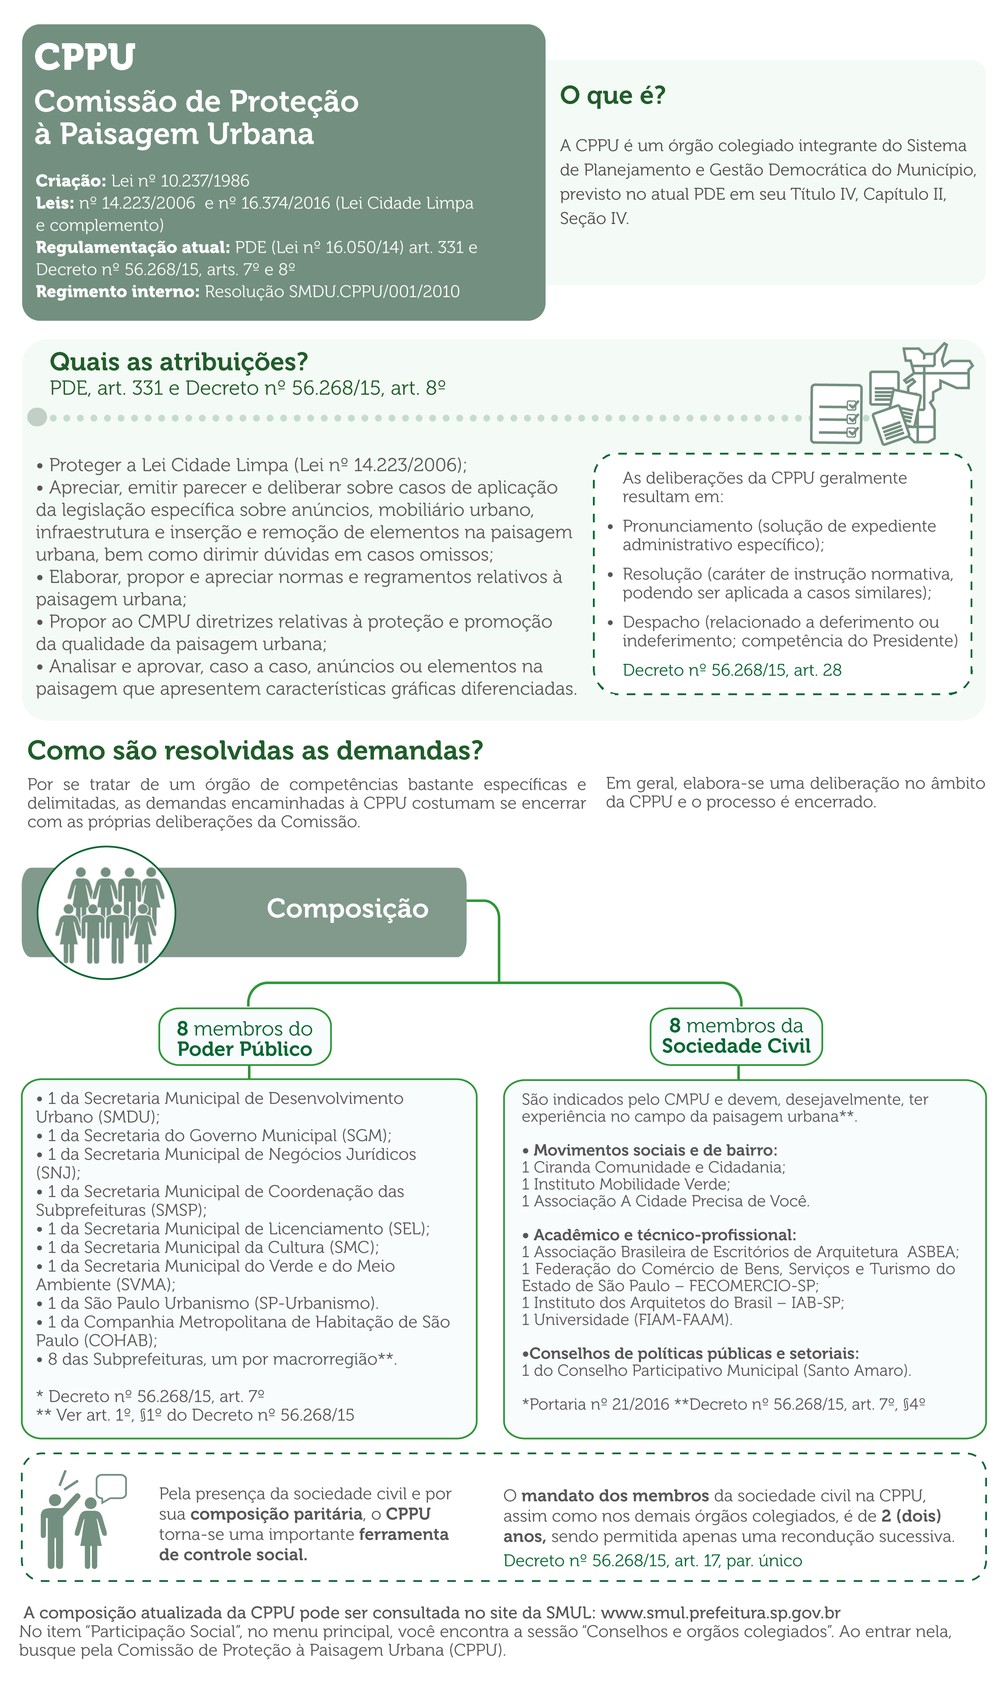 Infográfico da Prefeitura de São Paulo explica o que é a Comissão de Proteção à Paisagem Urbana (CPPU). — Foto: Reprodução